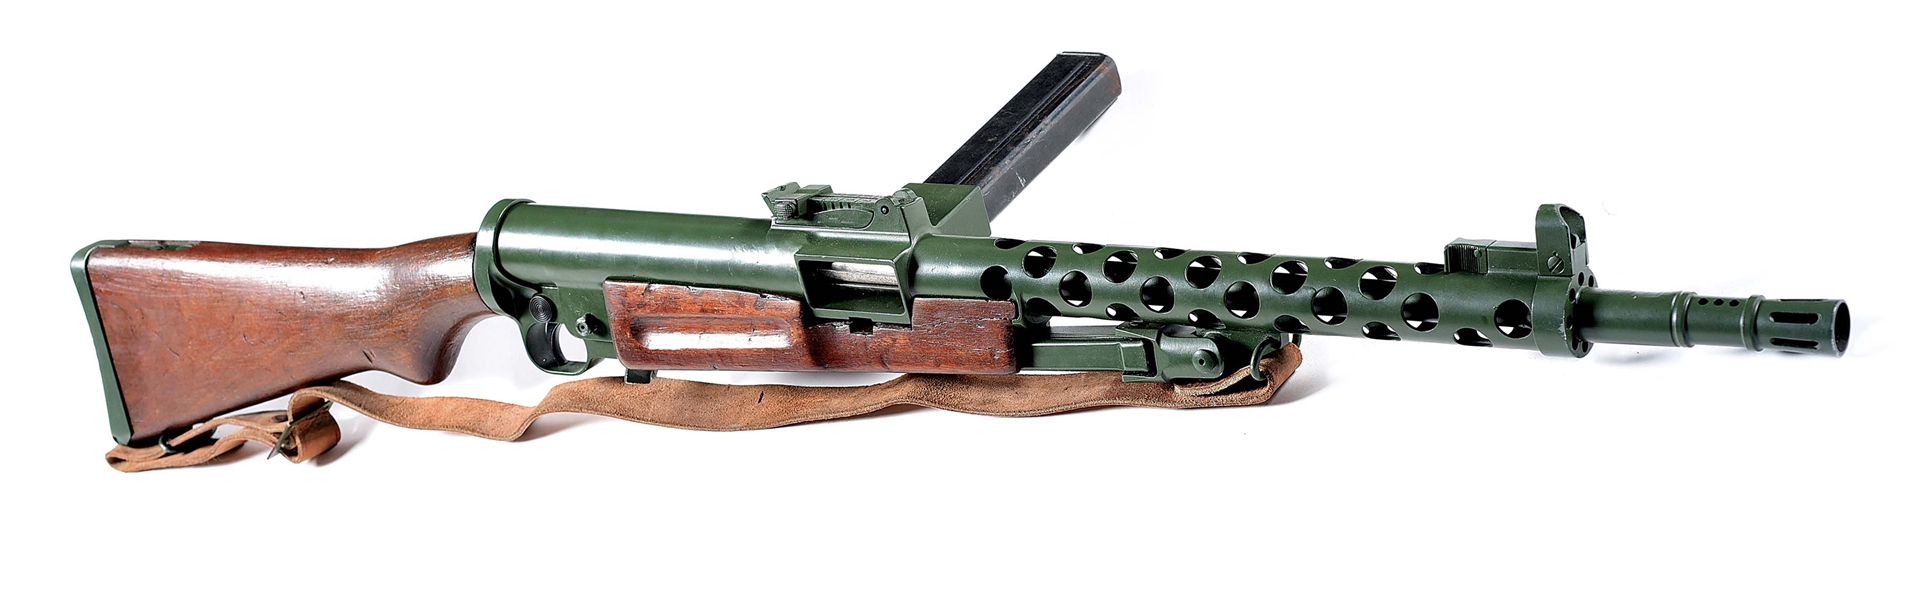 (M) MK GUN MODS BRNO ZK-383 SEMI-AUTOMATIC RIFLE.